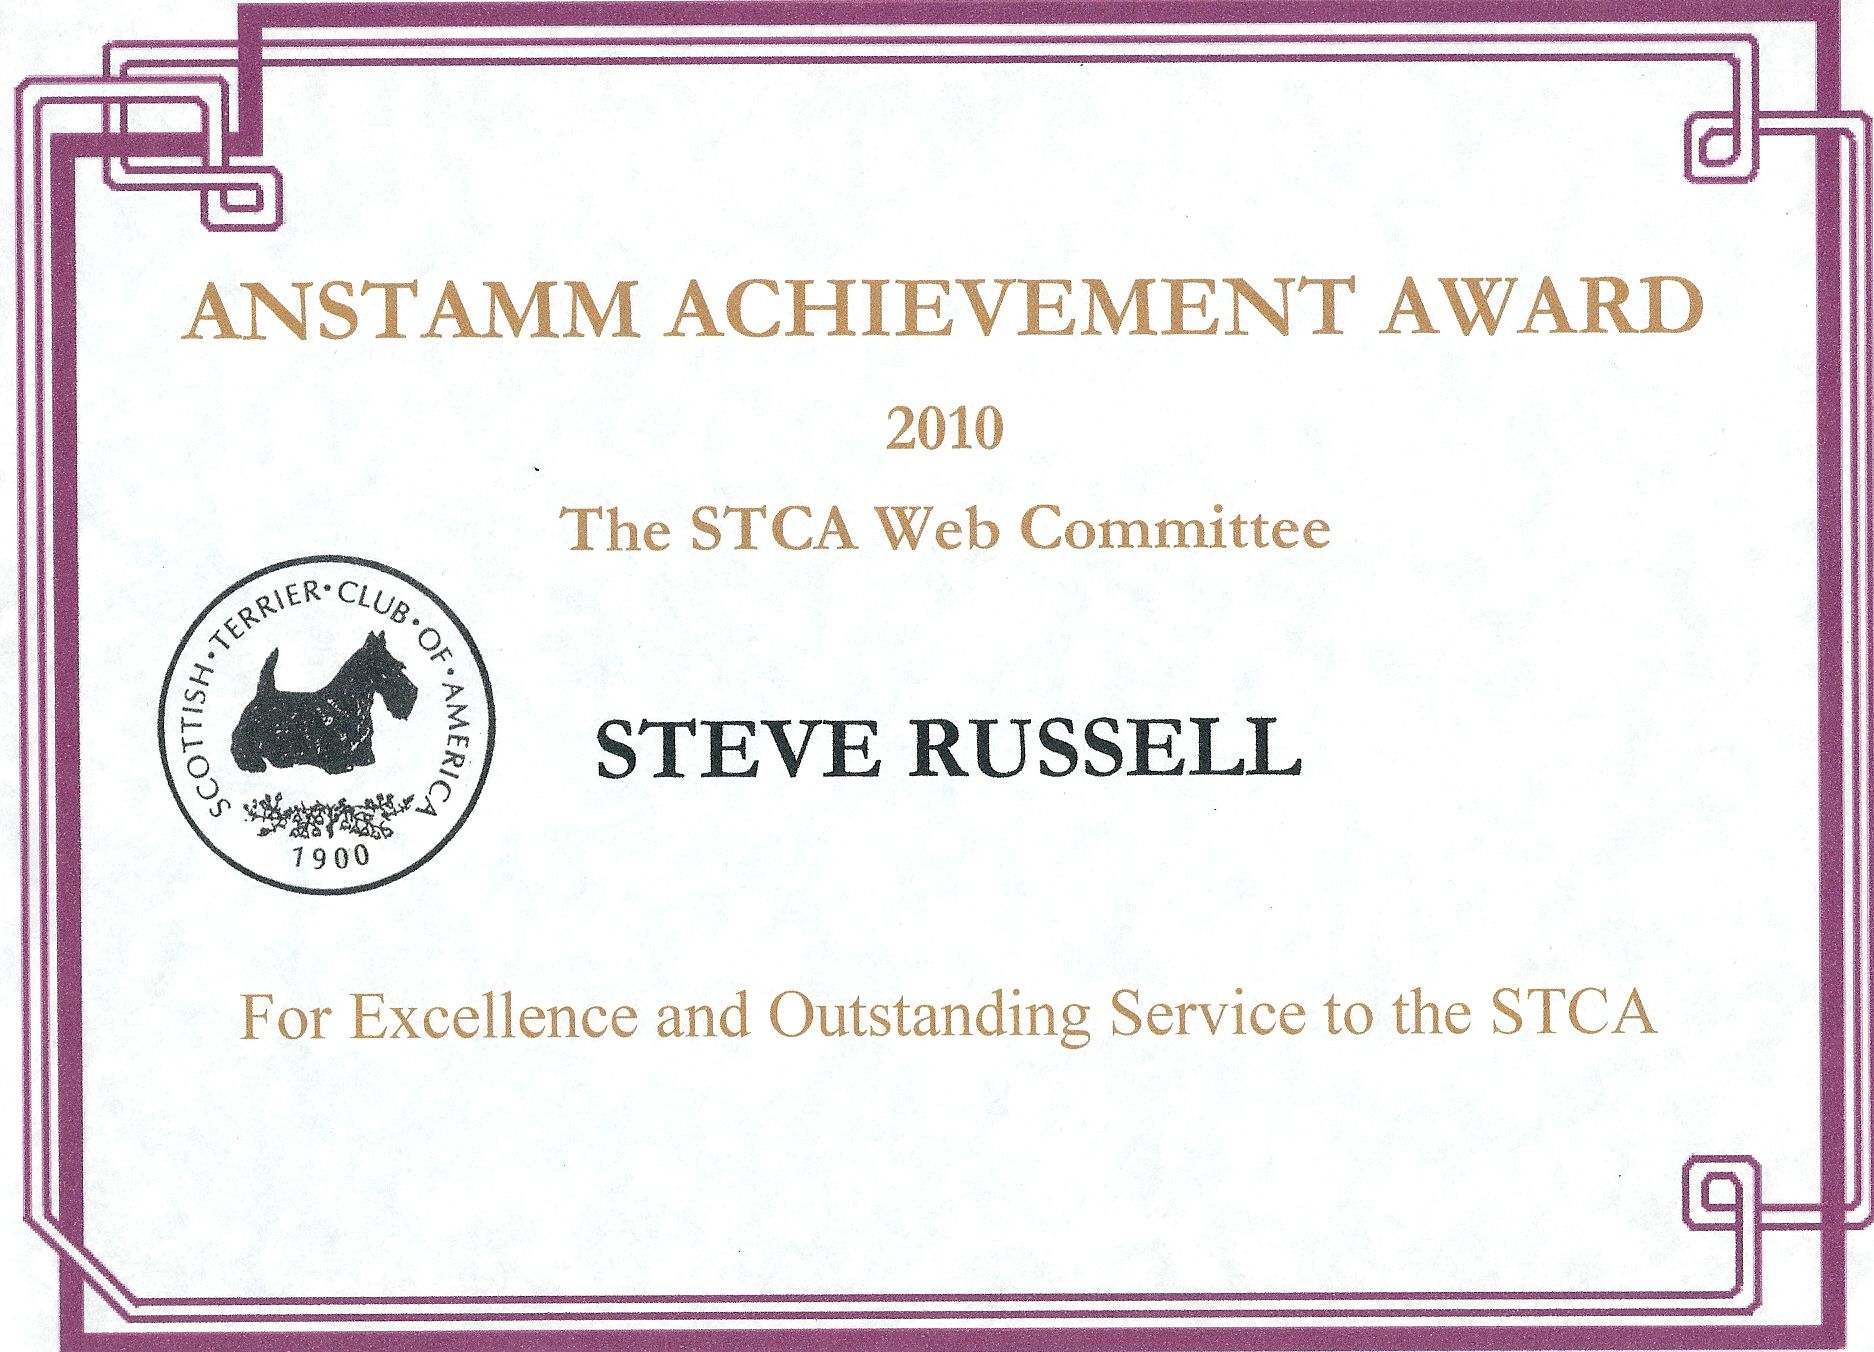 Anstamm Achievement Award